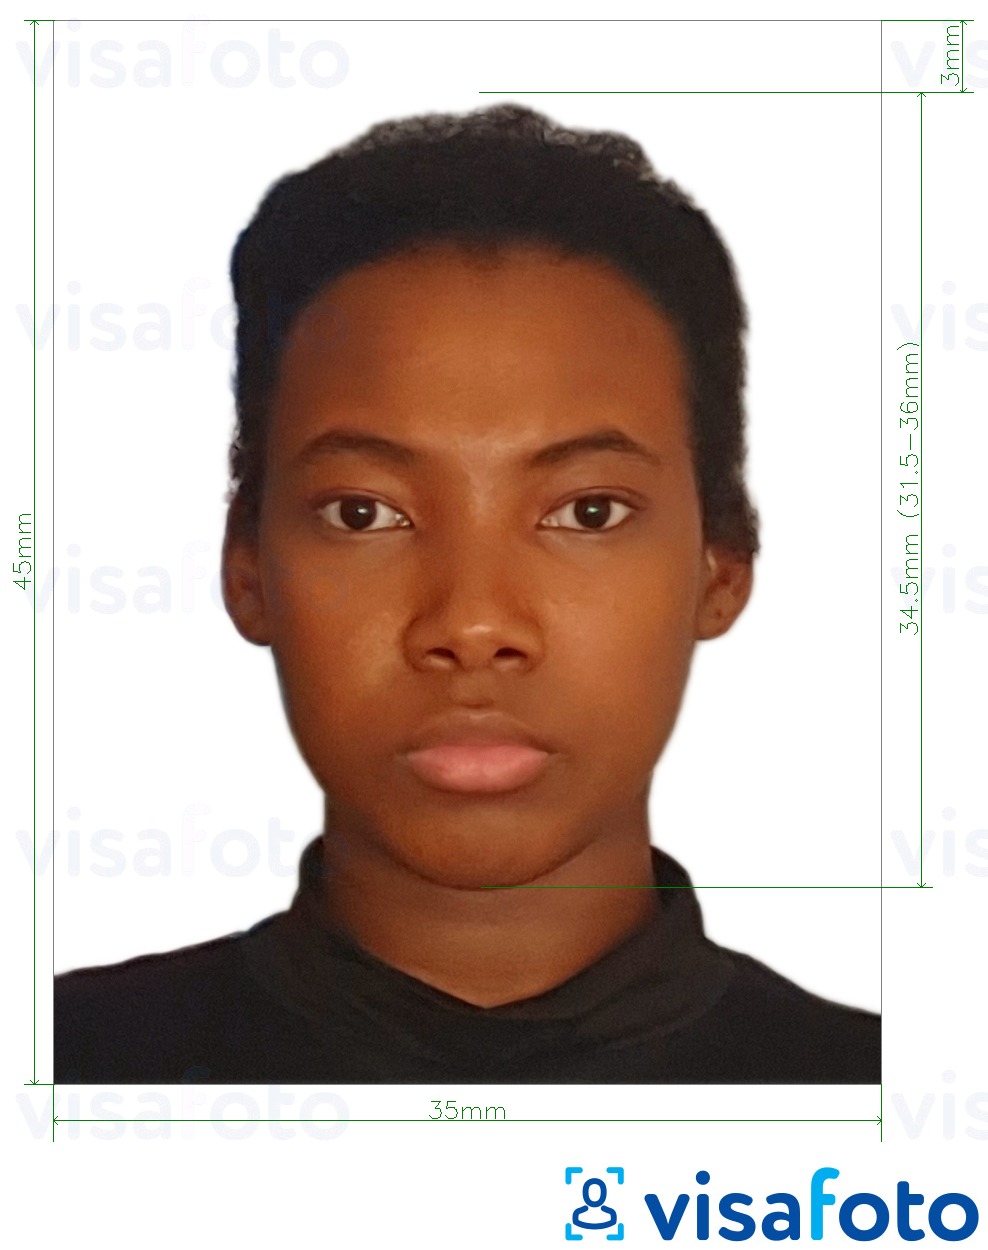 Primjer fotografije za Beninska putovnica 3,5x4,5 cm (35x45 mm) s točno određenom veličinom